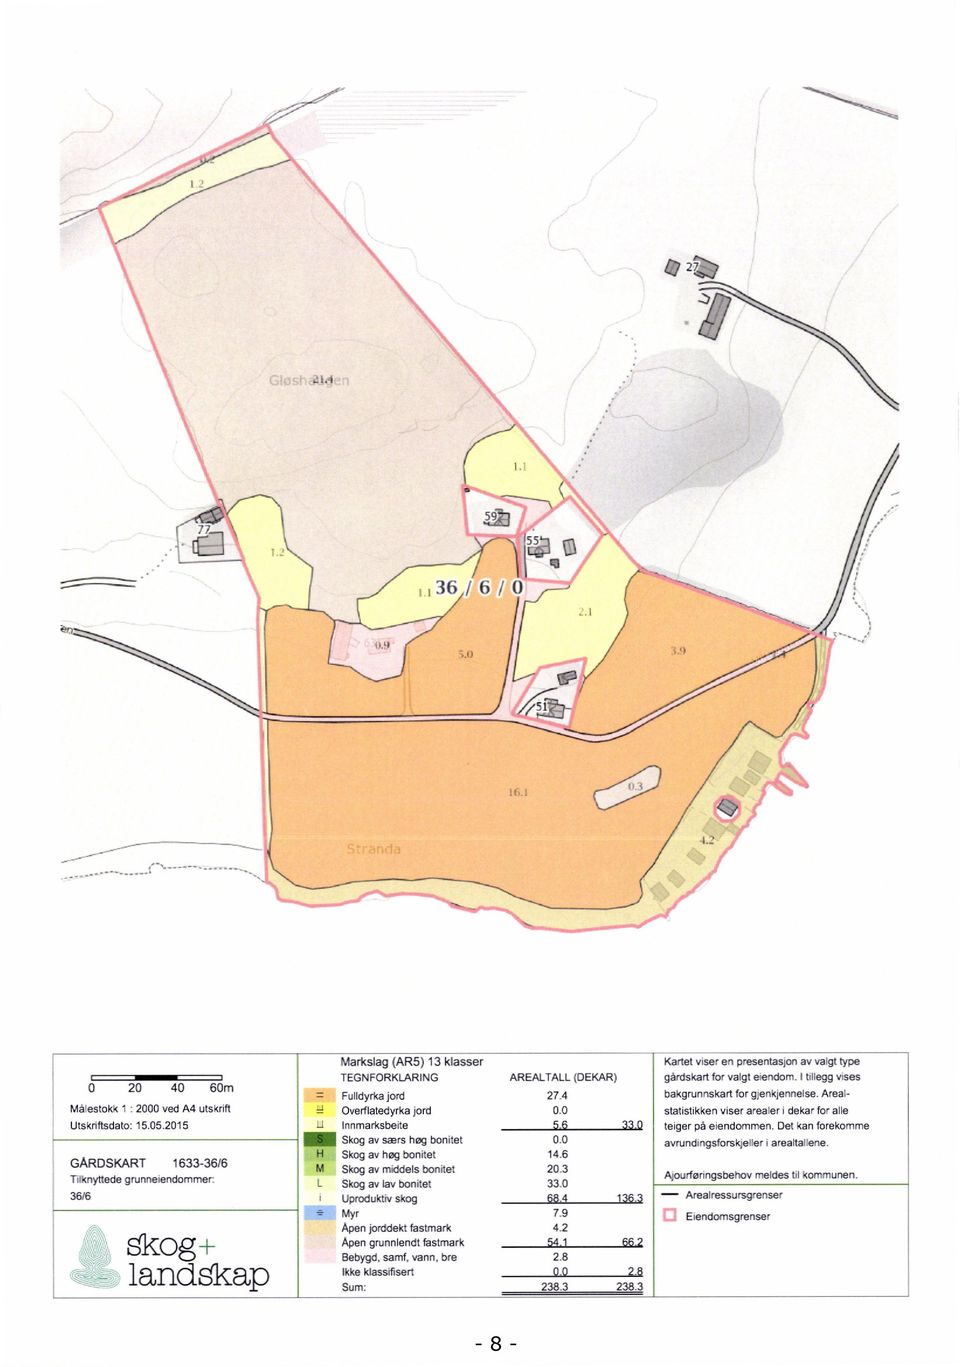 1 MSkog LSkog gårdskart for valgt eiendom. I tillegg vises bakgrunnskart for gjenkjennelse. Areal- 27.4 jord statistikken viser arealer i dekar for alle 33 Q 33.0 68.4 7.